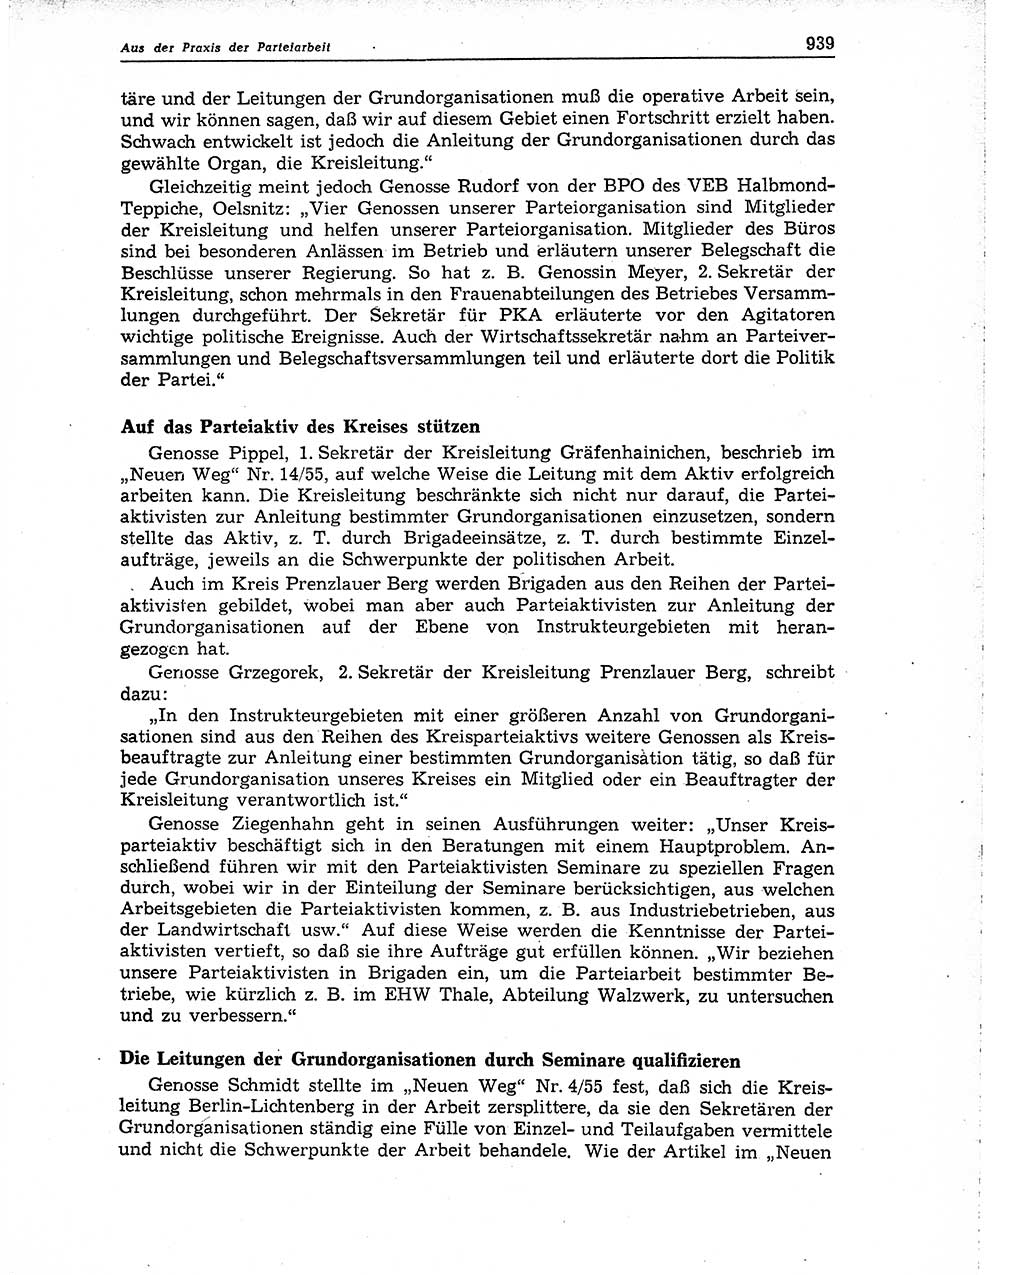 Neuer Weg (NW), Organ des Zentralkomitees (ZK) der SED (Sozialistische Einheitspartei Deutschlands) für Fragen des Parteiaufbaus und des Parteilebens, 10. Jahrgang [Deutsche Demokratische Republik (DDR)] 1955, Seite 939 (NW ZK SED DDR 1955, S. 939)